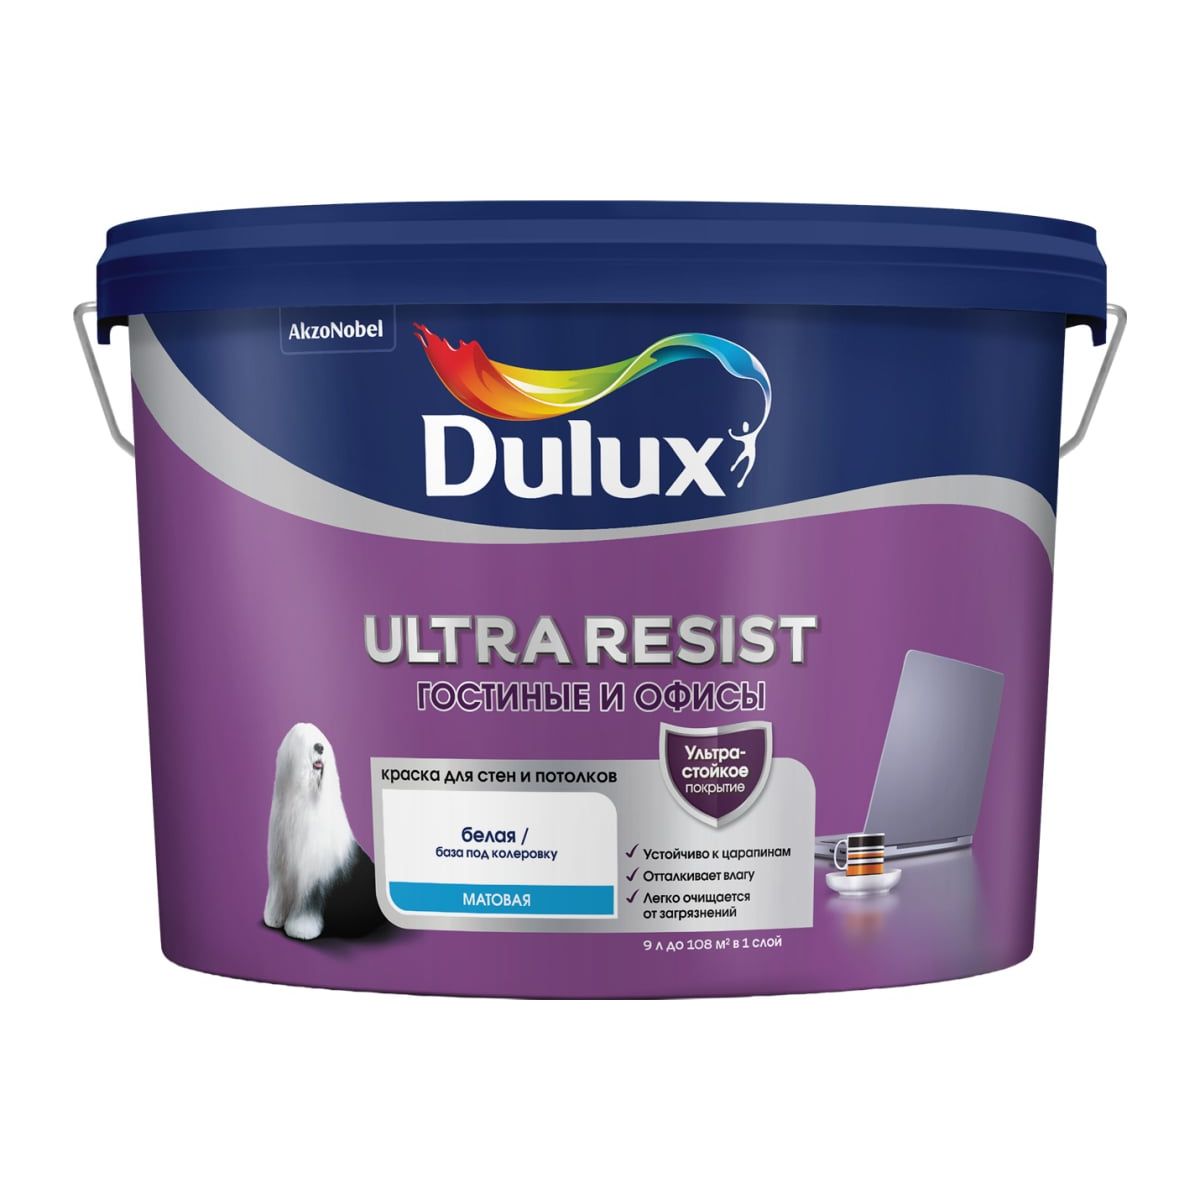 Краска Dulux Ultra Resist гостиные и офисы матовая, BC, 9 л